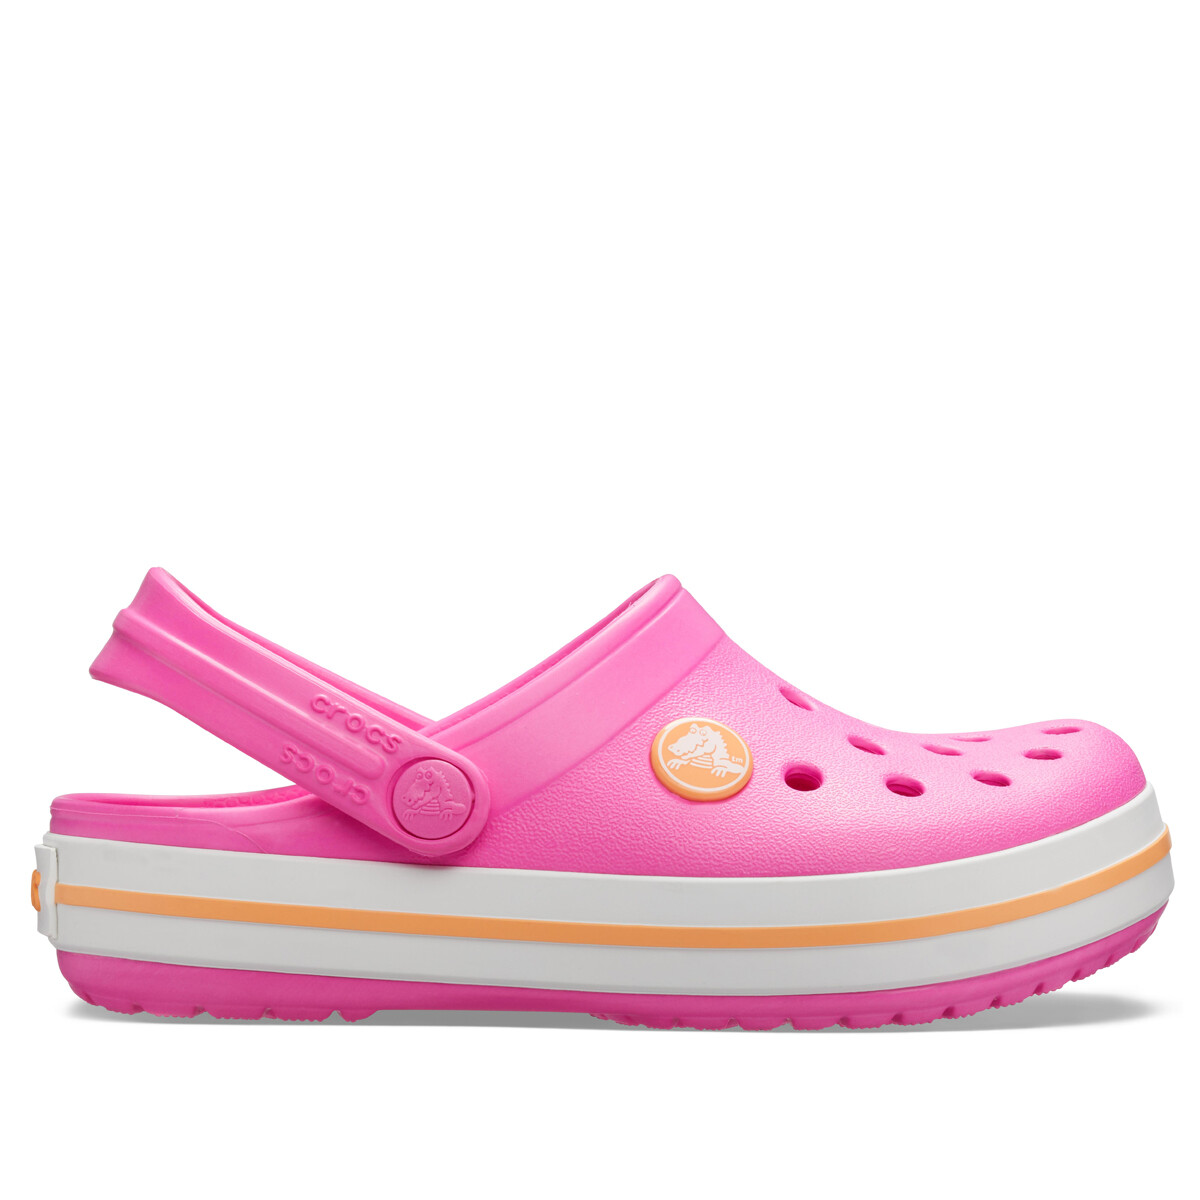 Crocs de niños Pink - CR2045376QZ - PINK 